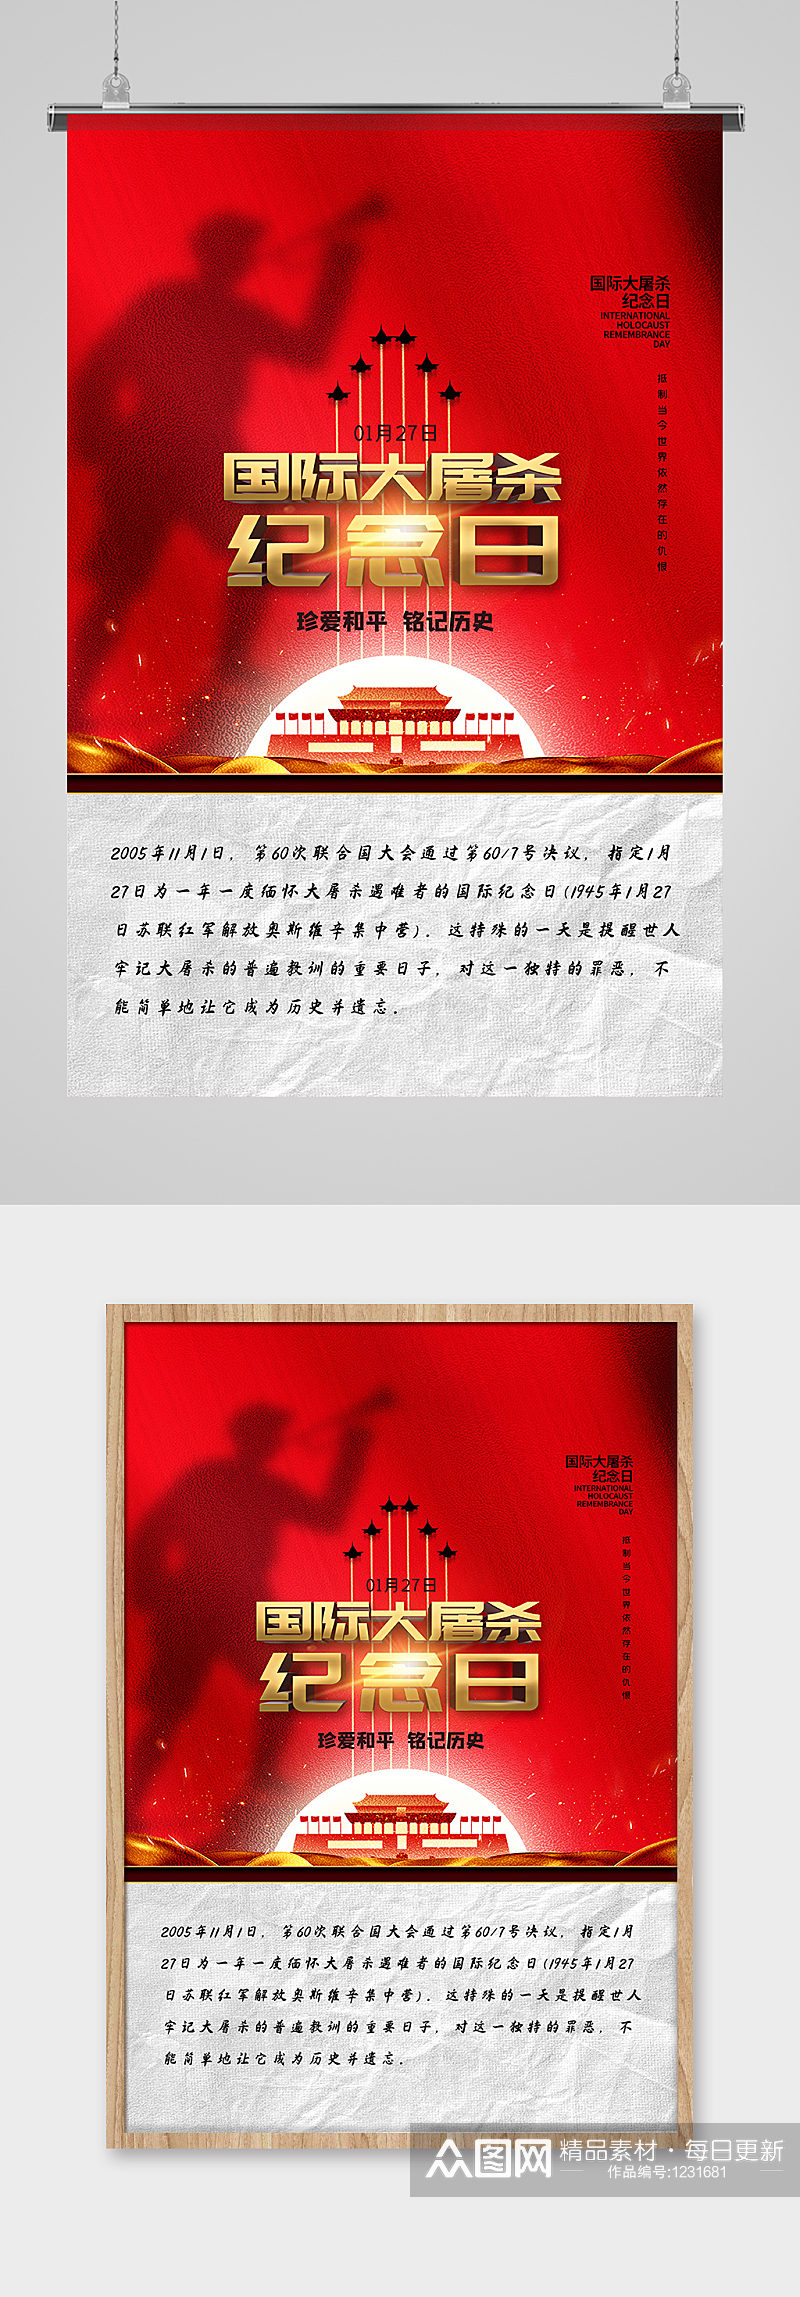 国际大屠杀纪念日红色简约海报素材